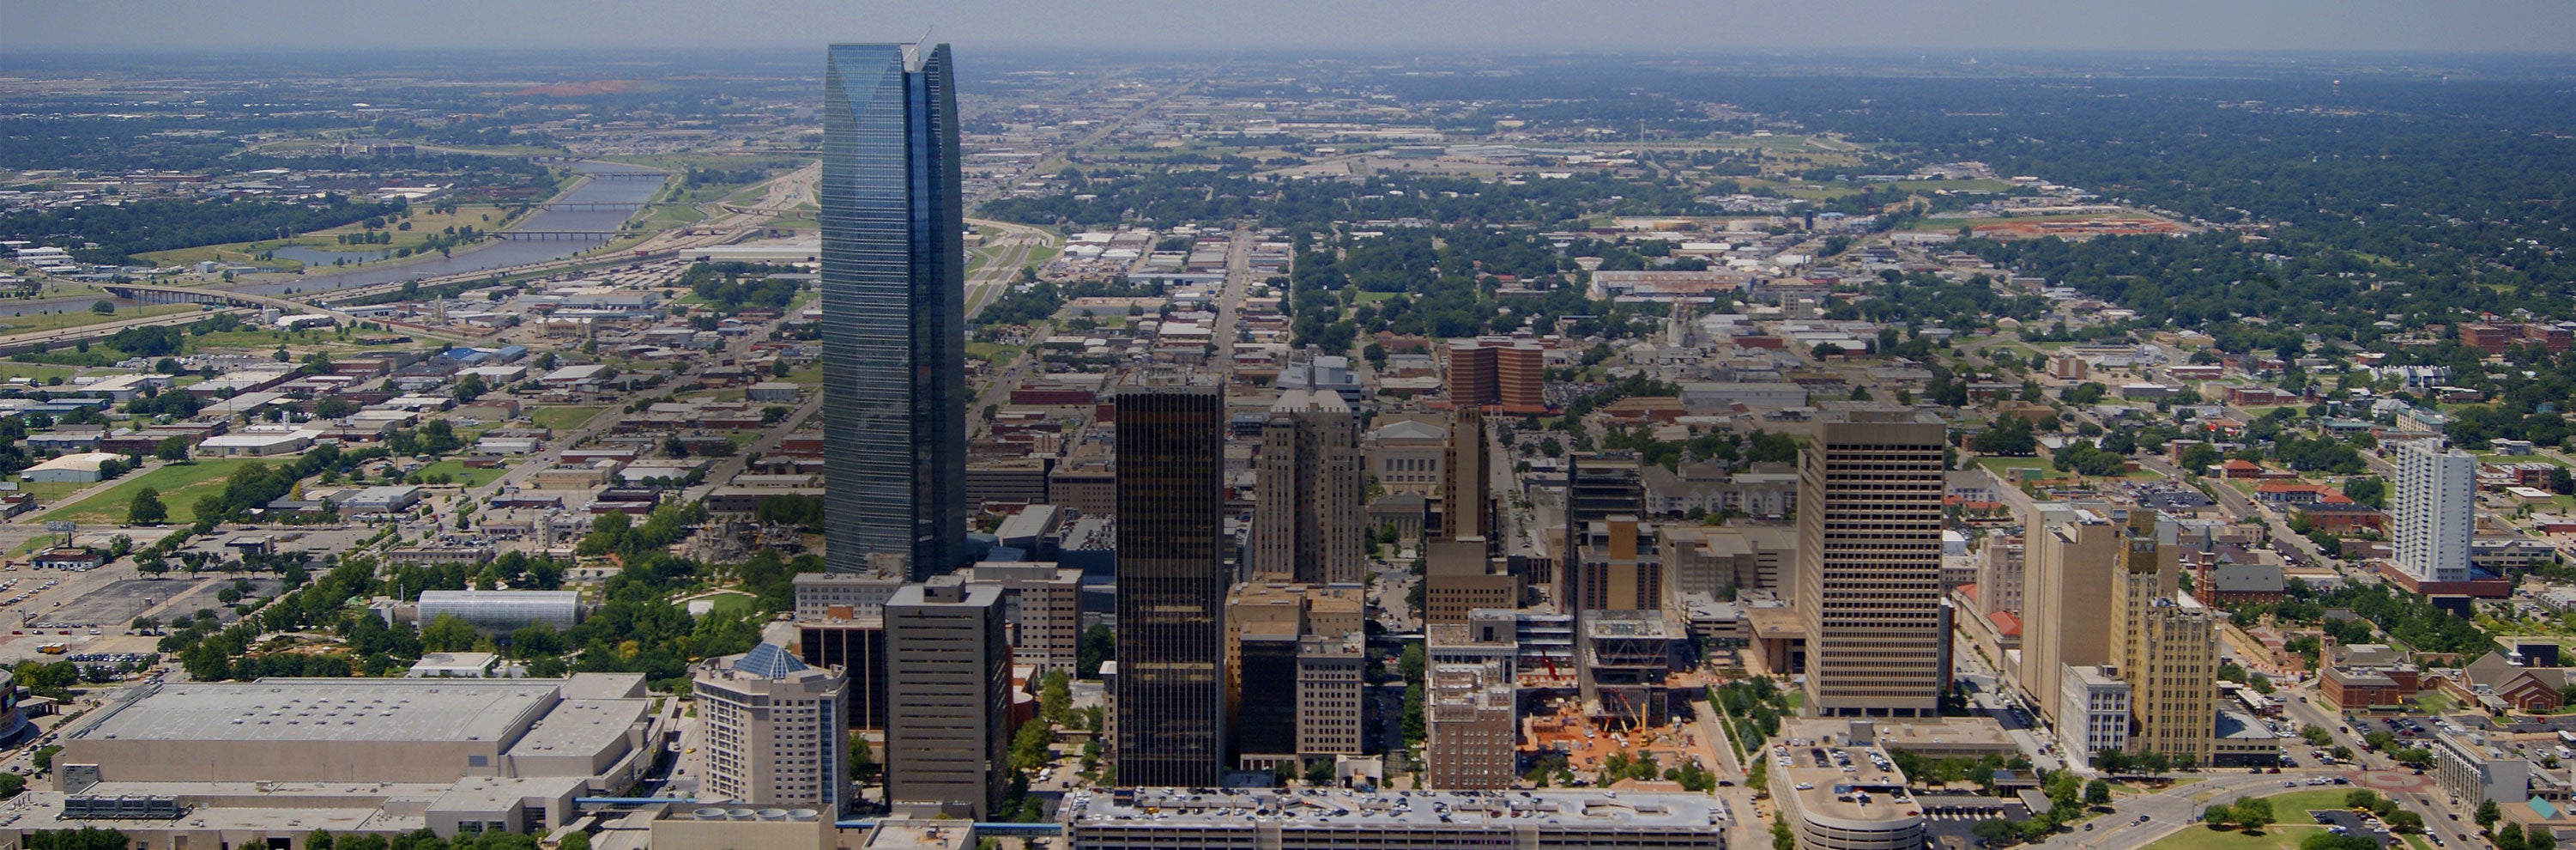 aerial skyline view of Oklahoma City